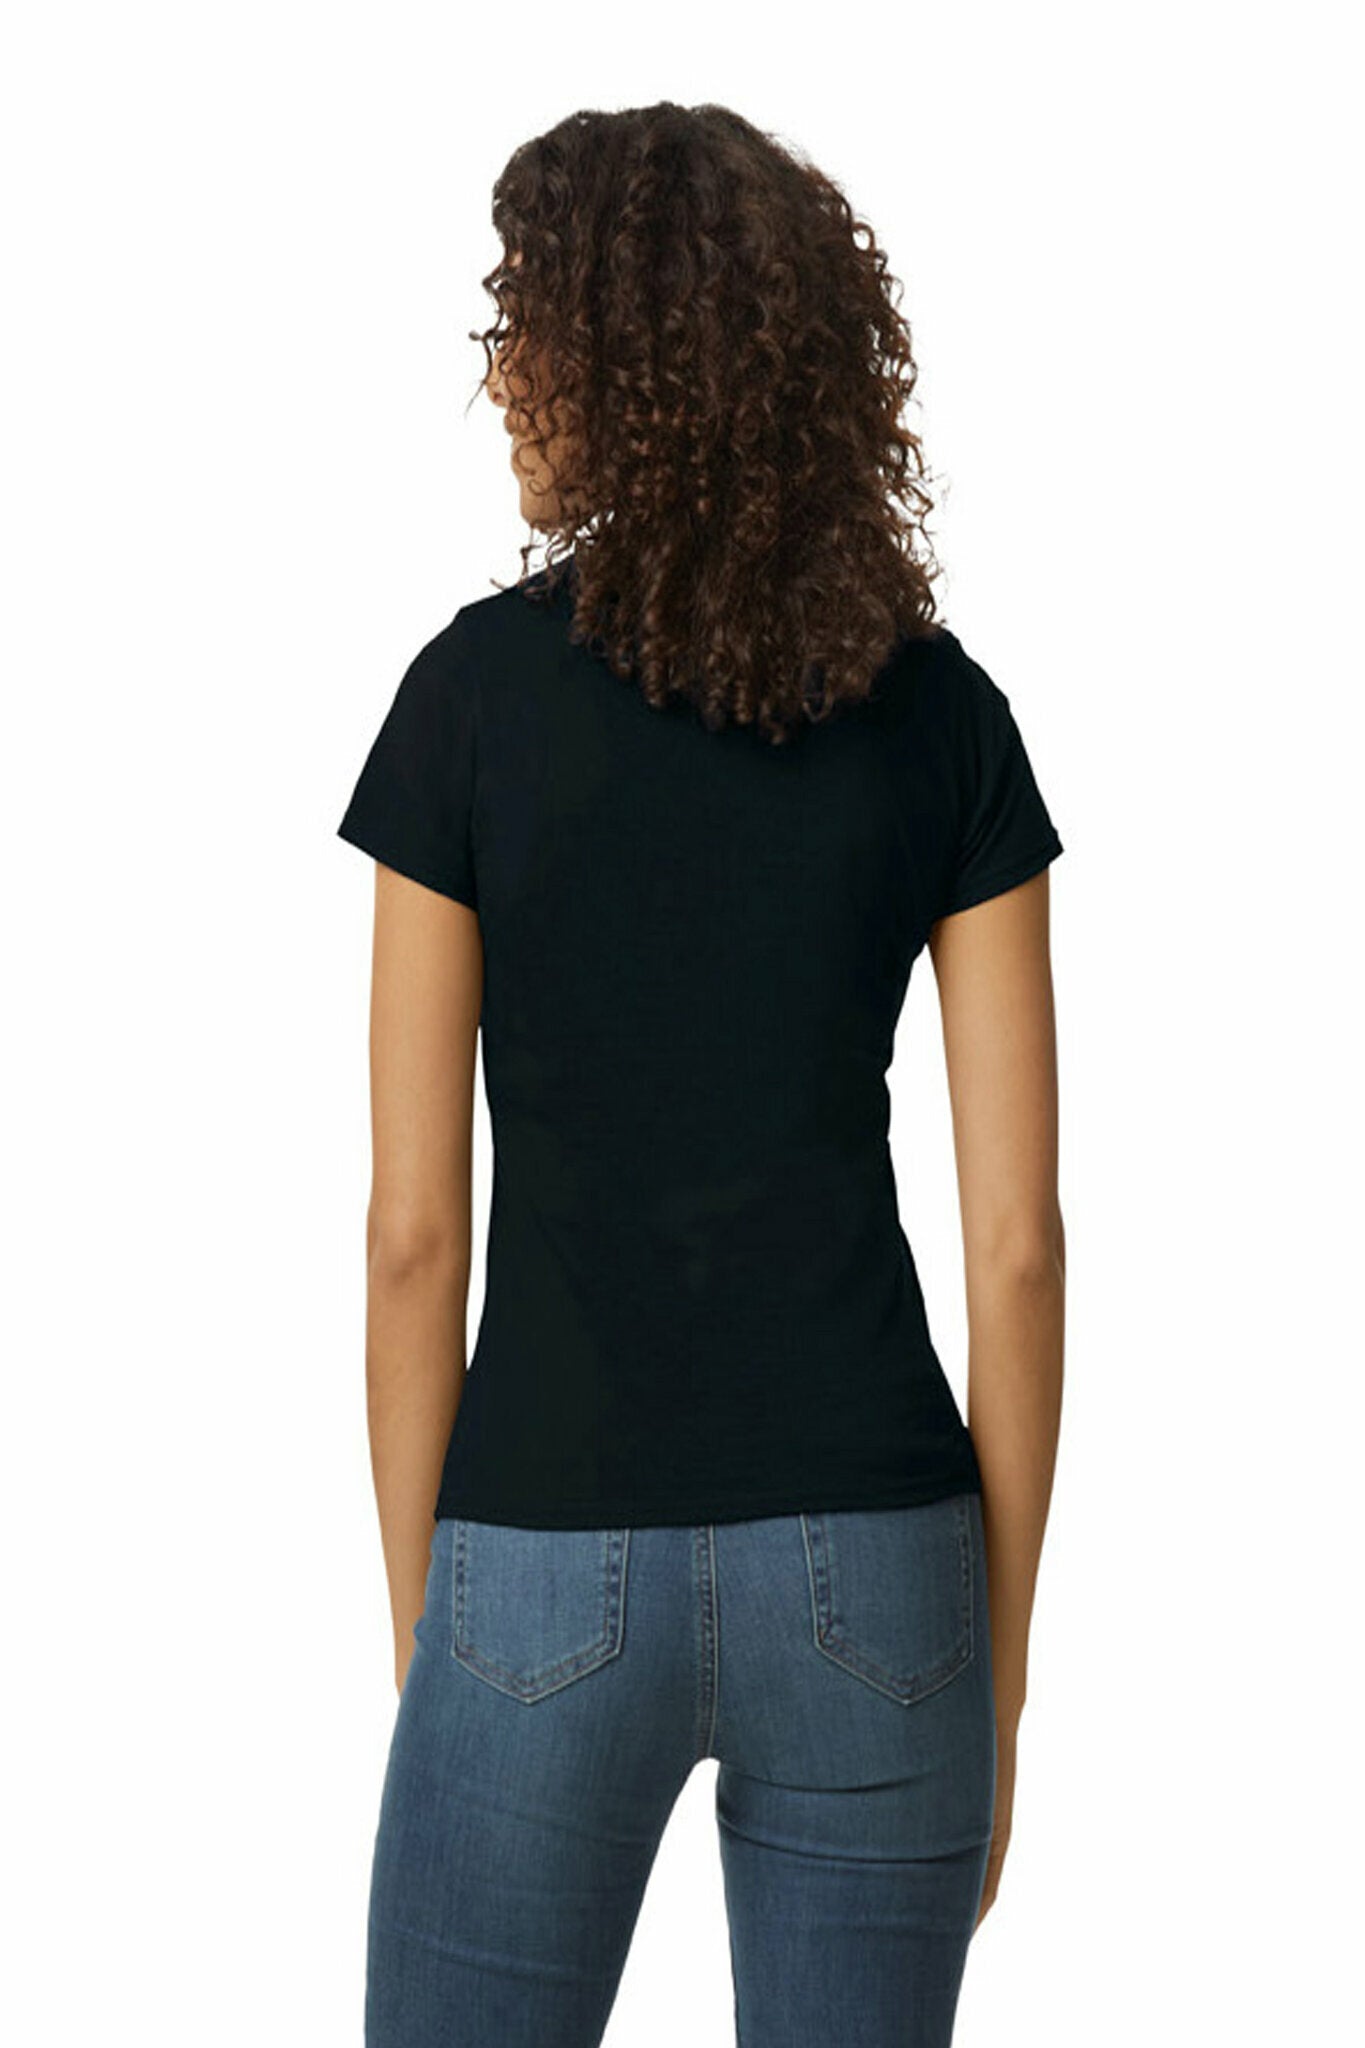 Gildan Softstyle Midweight Women's T-shirt Black